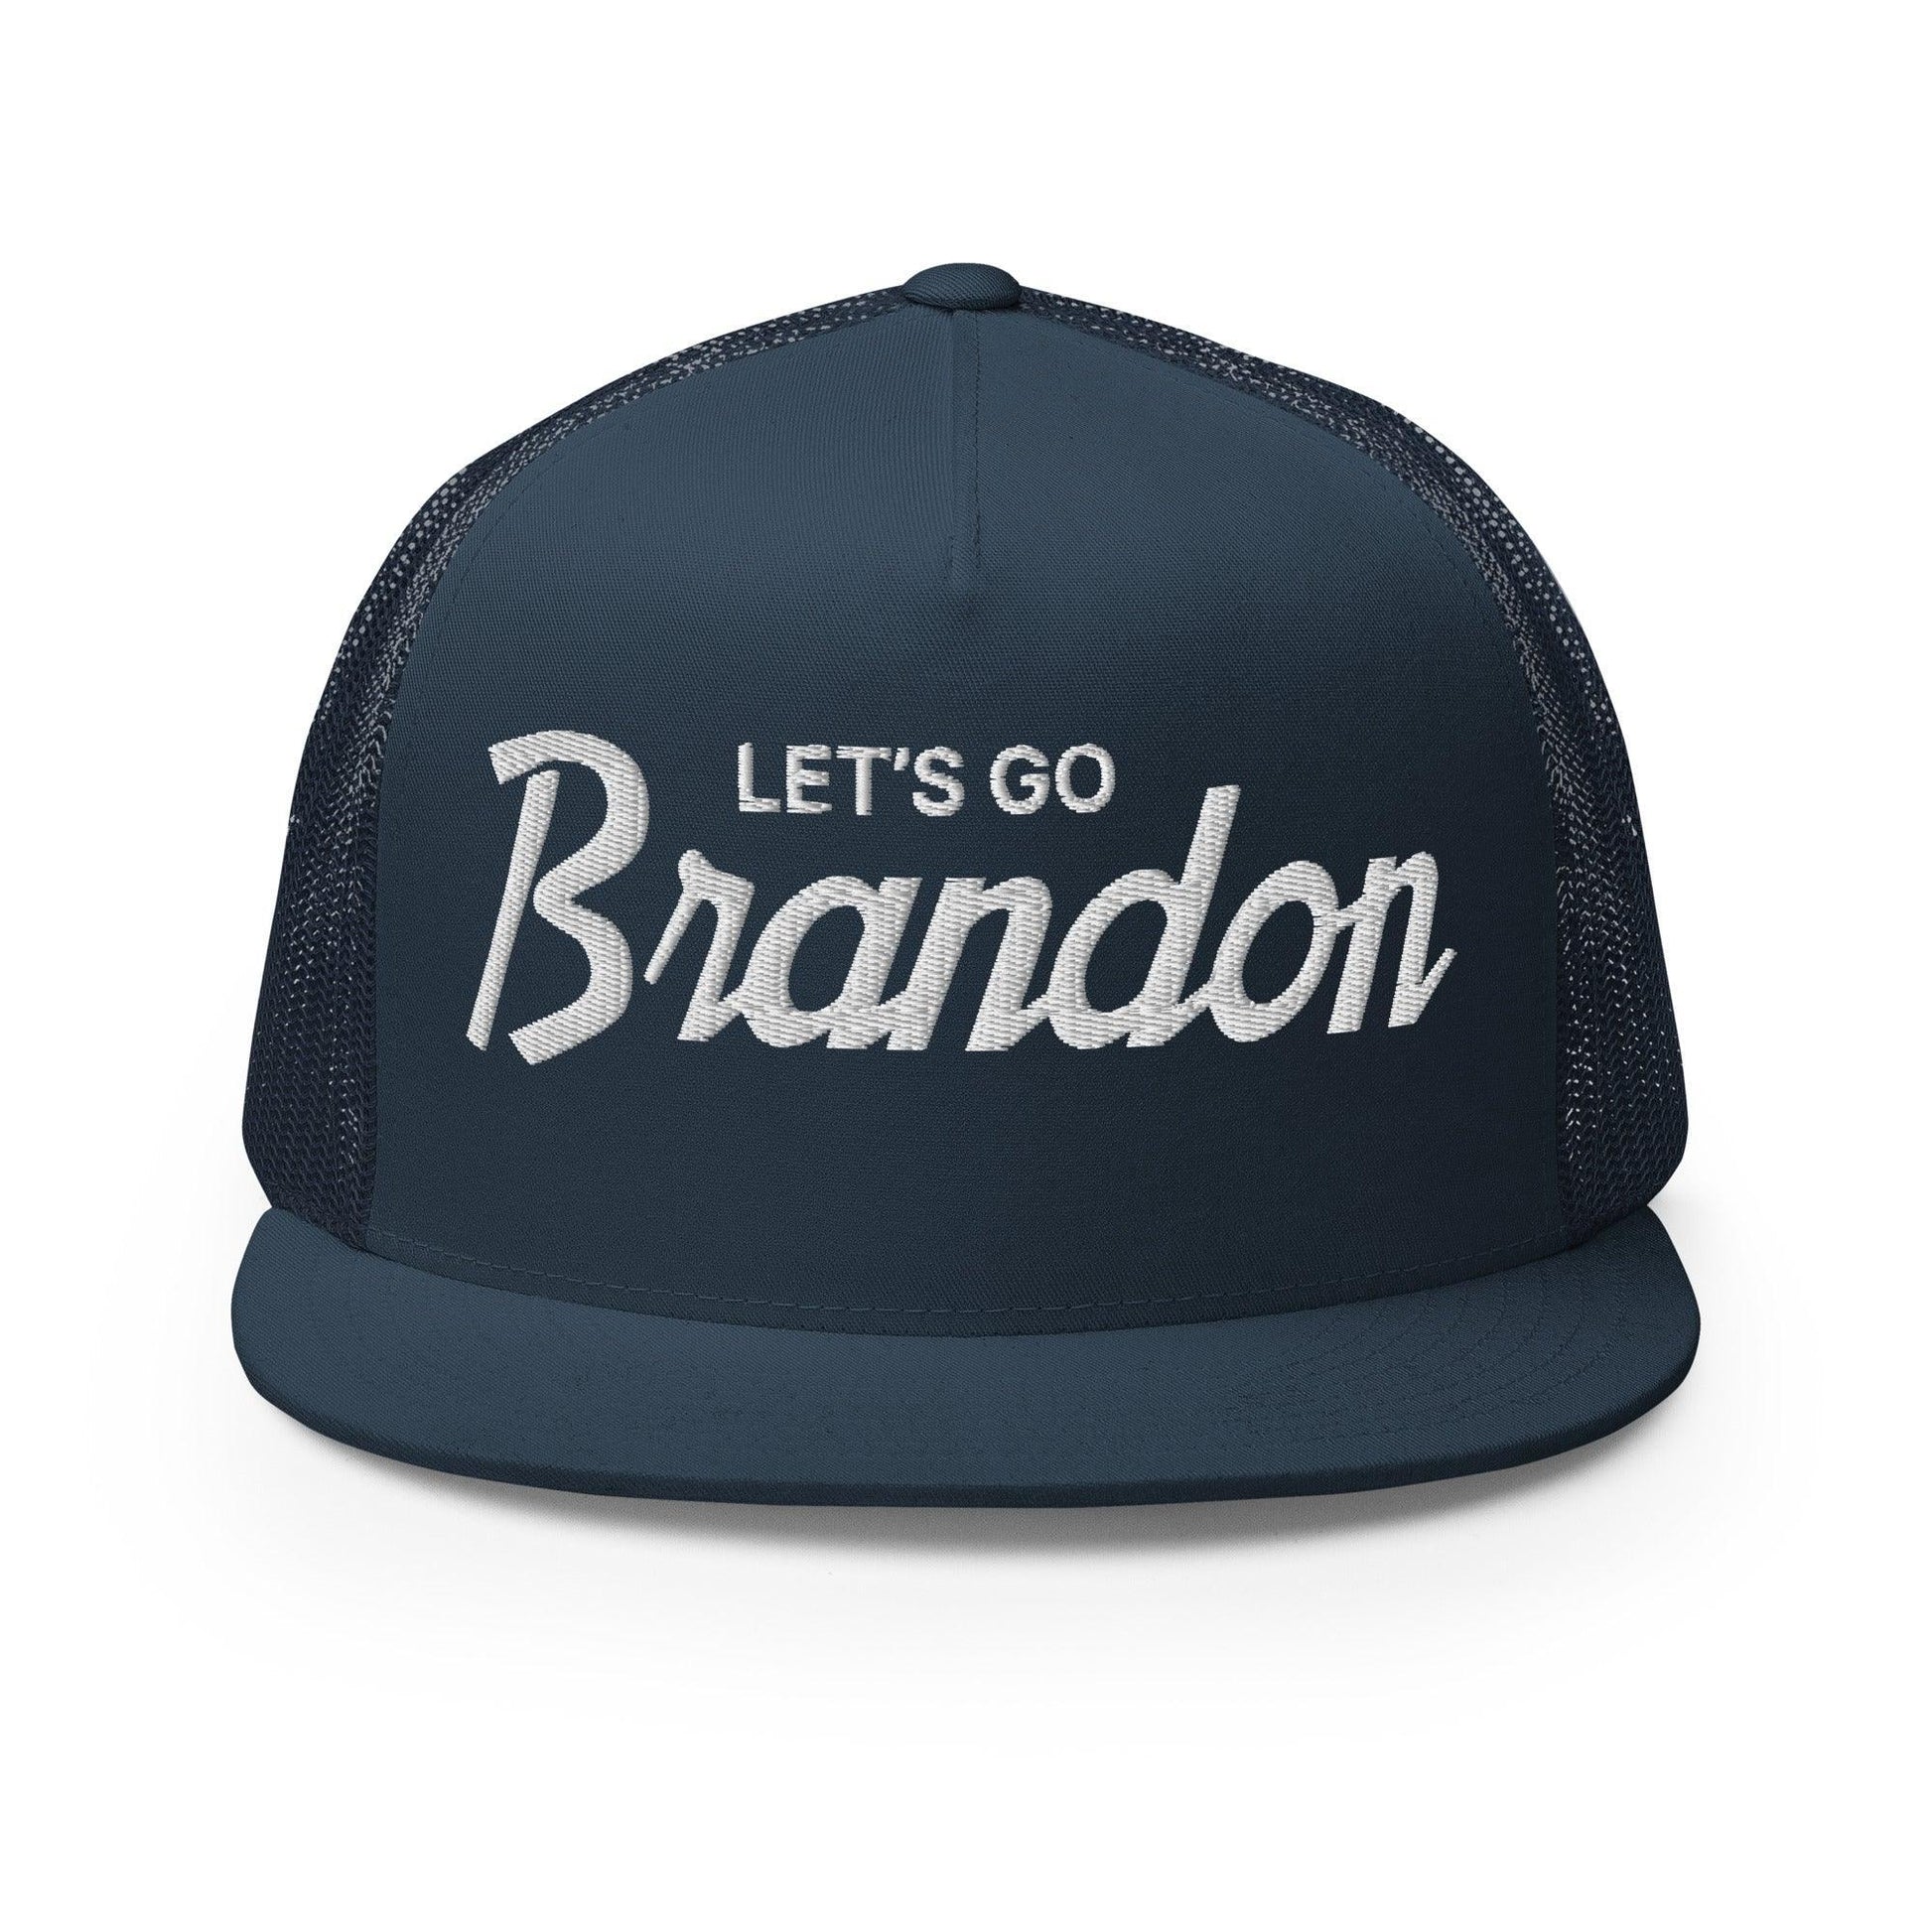 Let's Go Brandon Script Flat Bill Brim Snapback Trucker Hat Navy